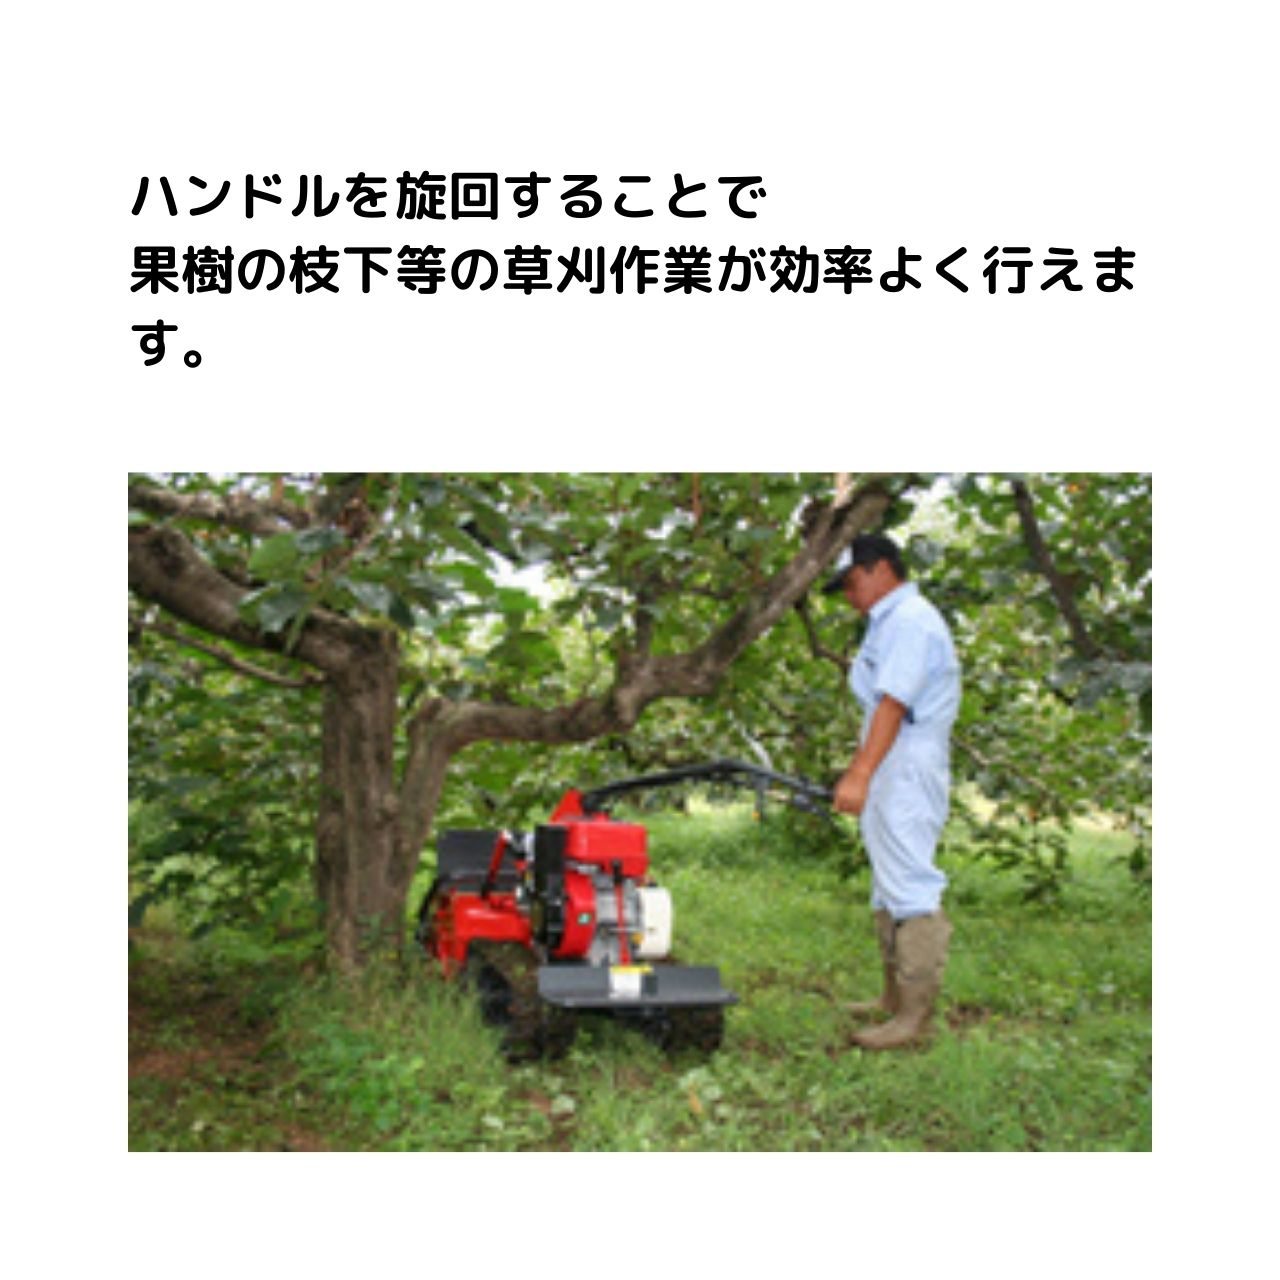 歩行型雑草刈車 ブッシュカッタージョージJr草なぎ CG82MS 筑水キャニコムの商品画像3